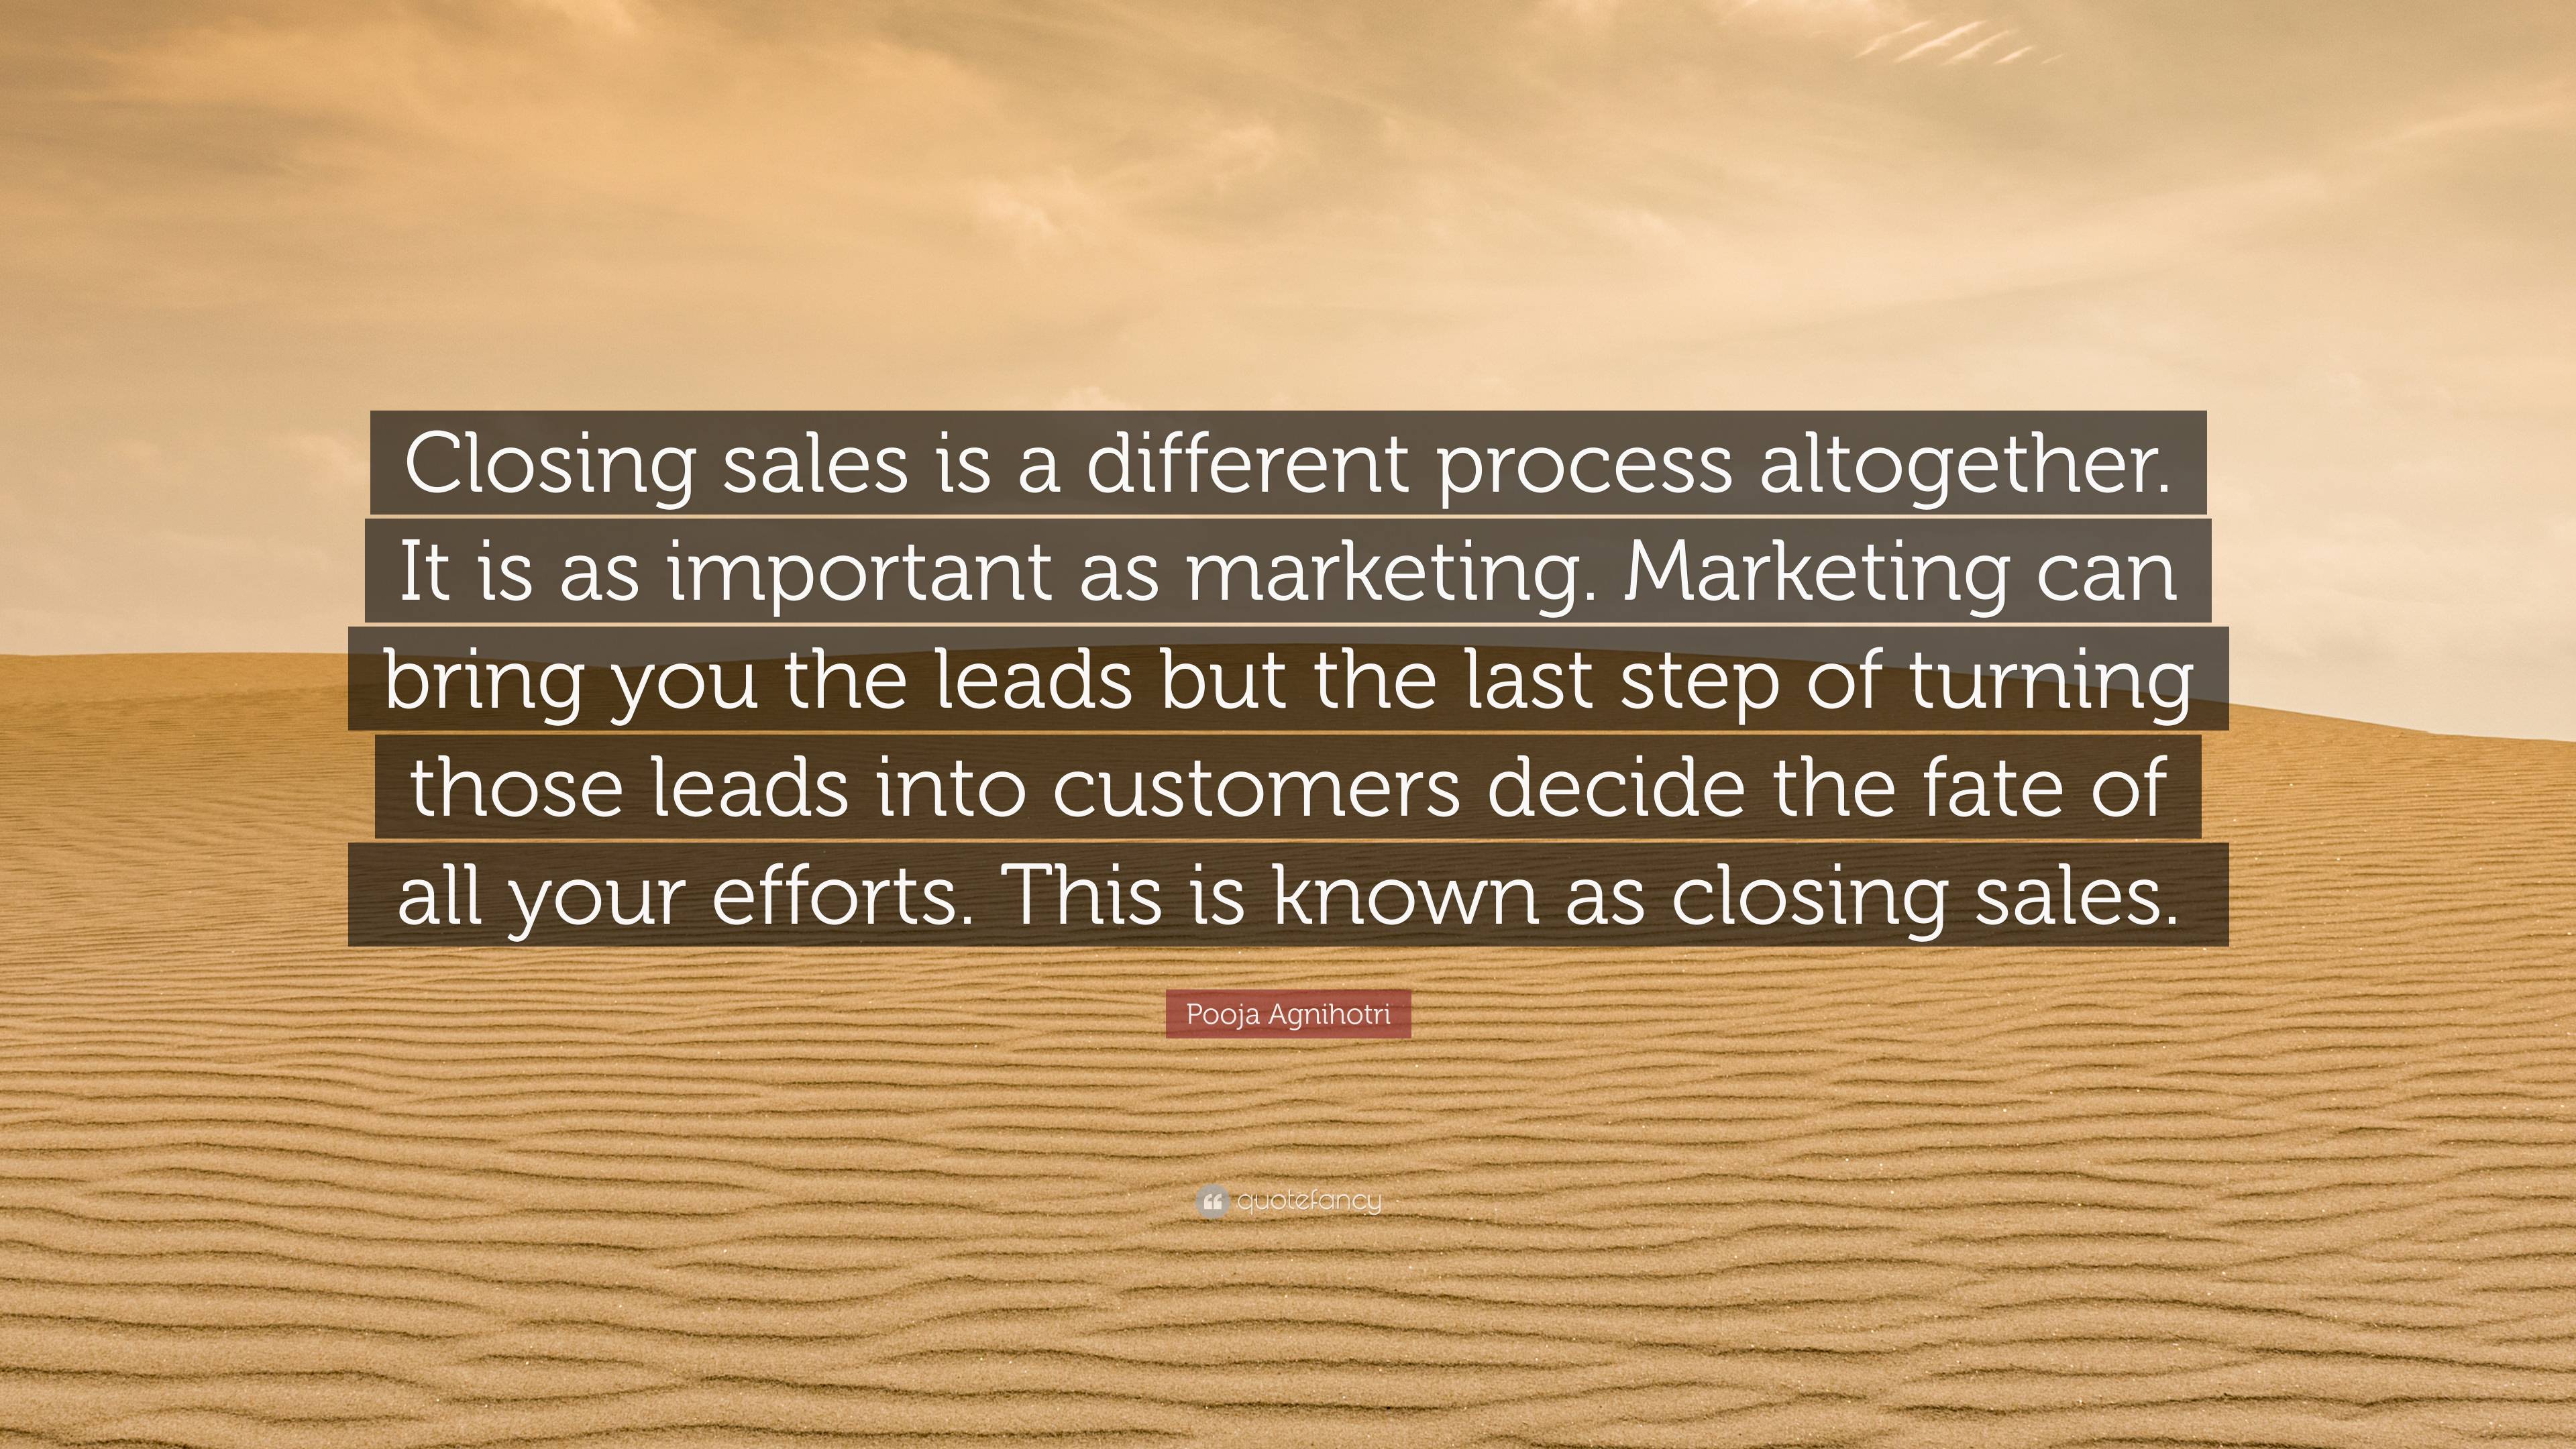 closing sales quotes